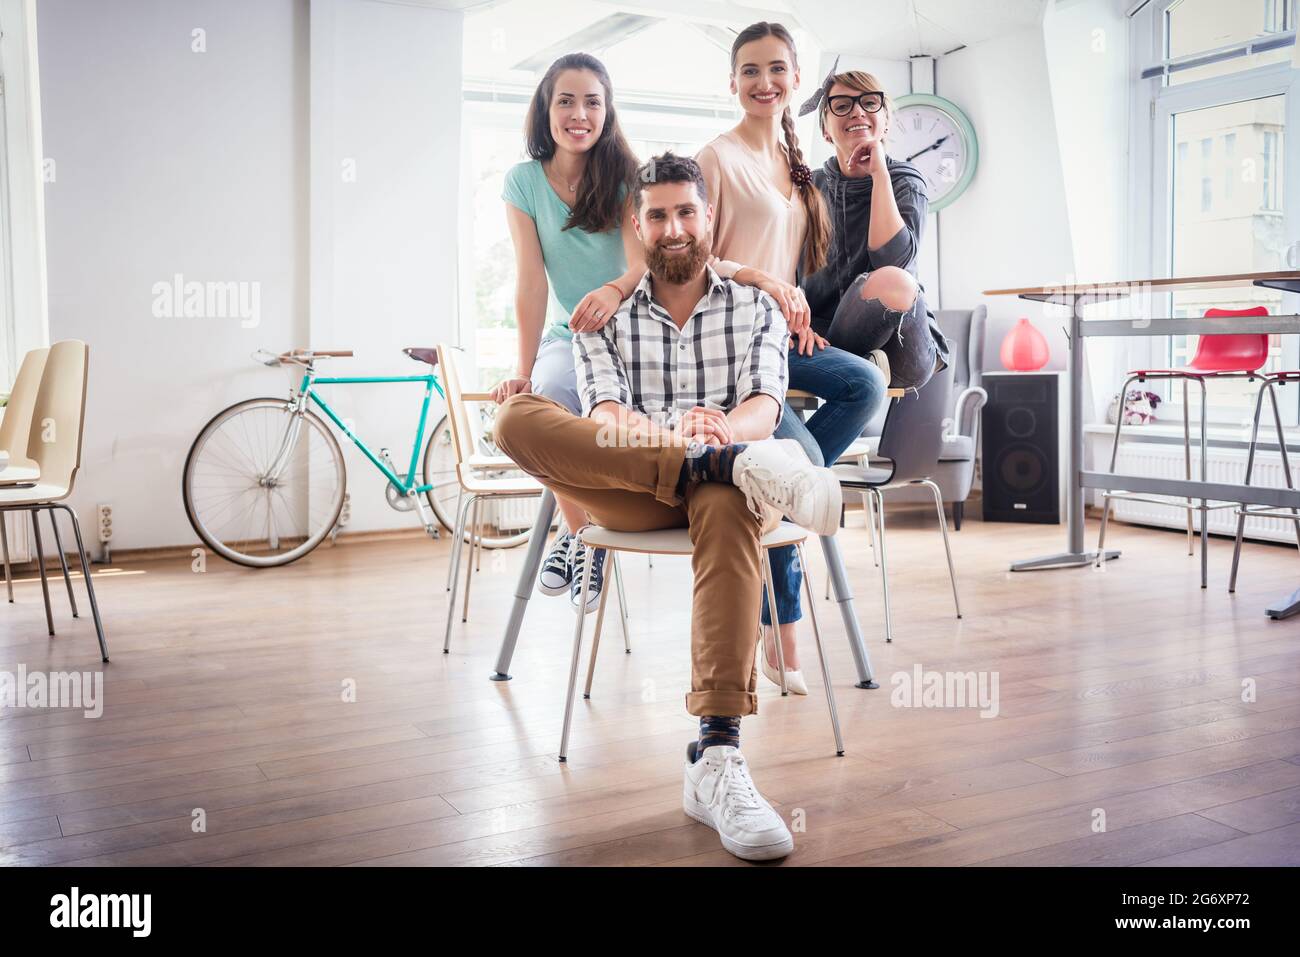 Porträt der vier Mitarbeiter lächelnd und mit Blick auf die Kamera beim Tragen cool legere Kleidung, während der Arbeit in der Shared Office Space eines modernen Hub fo Stockfoto